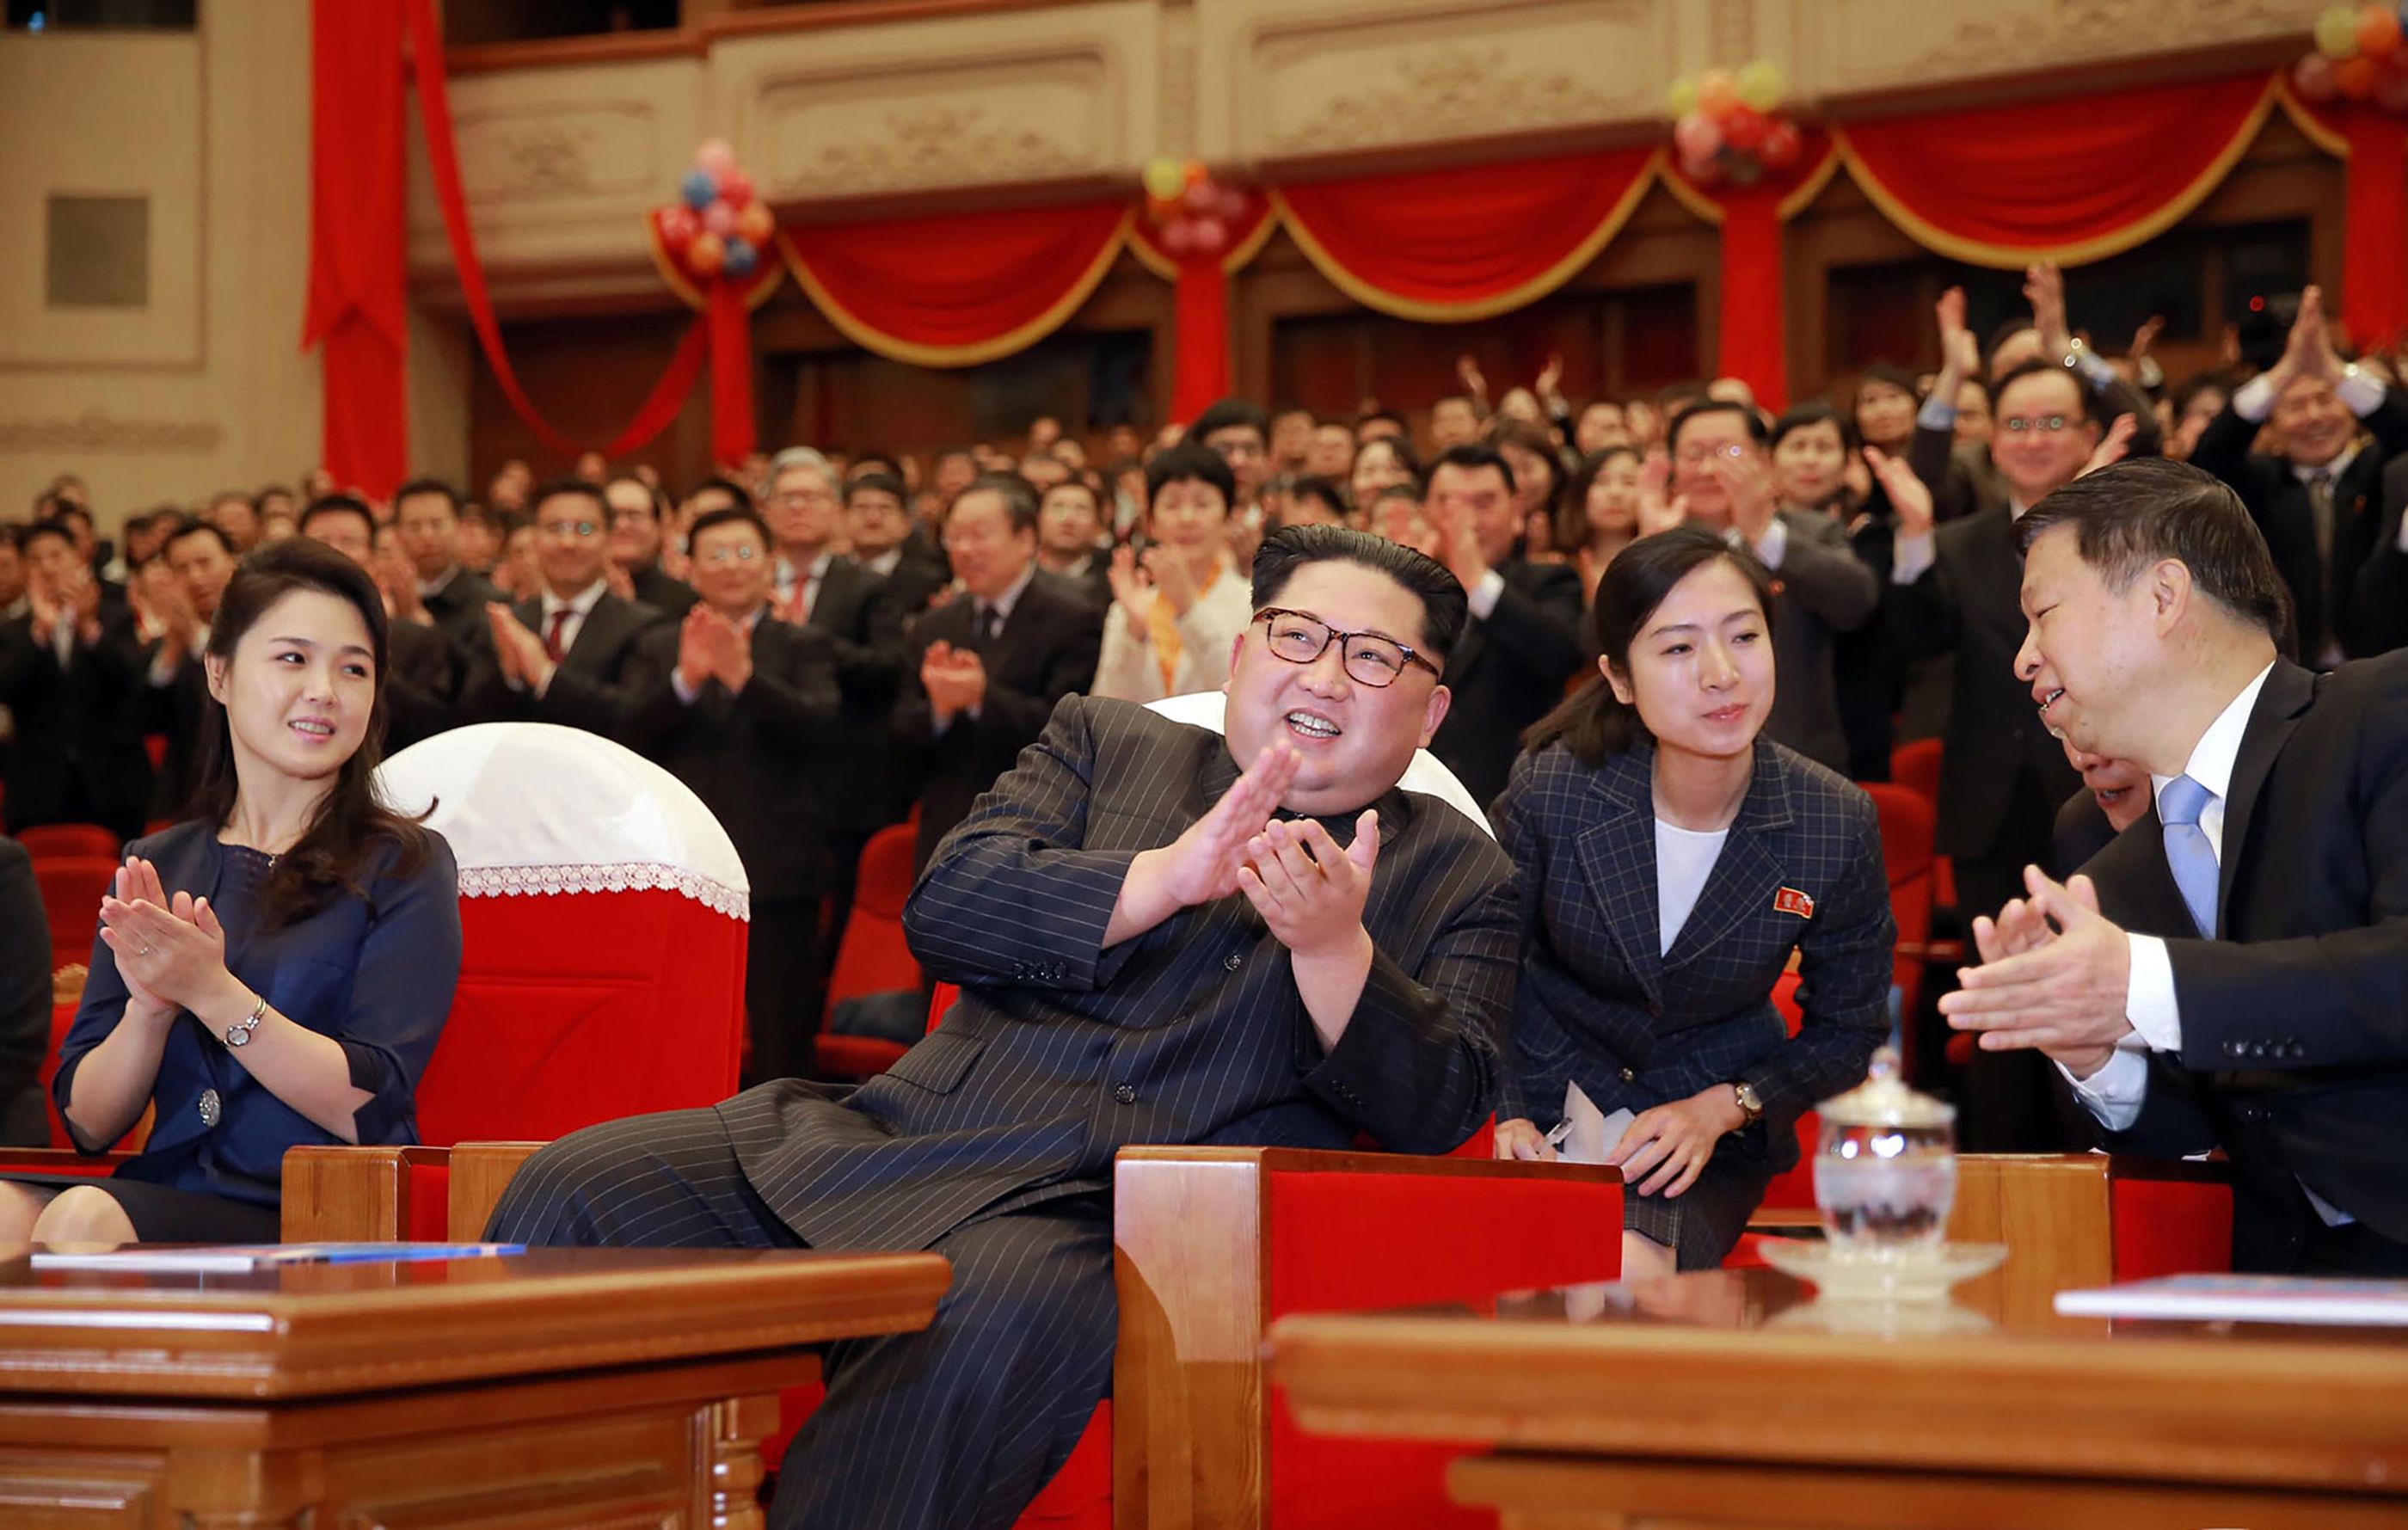 زعيم كوريا الشمالية مع أحد المسئولين الصينيين